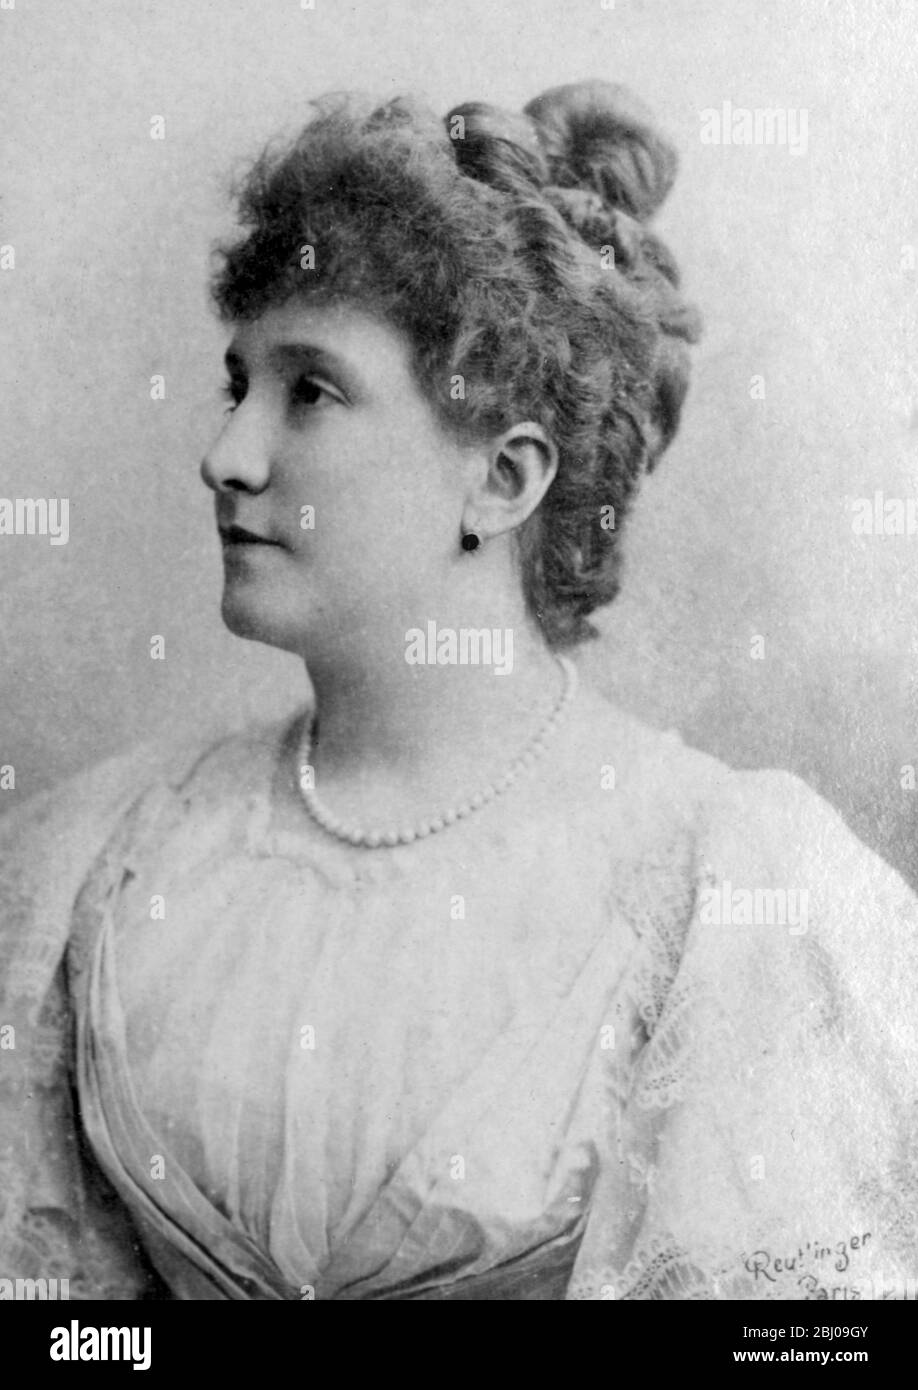 Dame Nellie Melba, GBE (19. Mai 1860 oder 61. - 23. Februar 1931), geborene Helen Porter Mitchell, legendäre australische Opernsopranistin und wahrscheinlich die berühmteste aller Soprane, war die erste Australierin, die in dieser Form internationale Anerkennung erlangte. Einer der ersten Entertainer, der 1918 zum DBE wurde. - Peach Melba wurde nach ihr benannt und von Auguste Escoffier im Savoy Hotel in London für Dame Nellie Melba kreiert, die dort eine Zeit lang lebte. - Melba Toast wurde auch von Auguste Escoffier im Savoy Hotel in London kreiert, als Dame Nellie Melba während ihres Lebens krank wurde Stockfoto